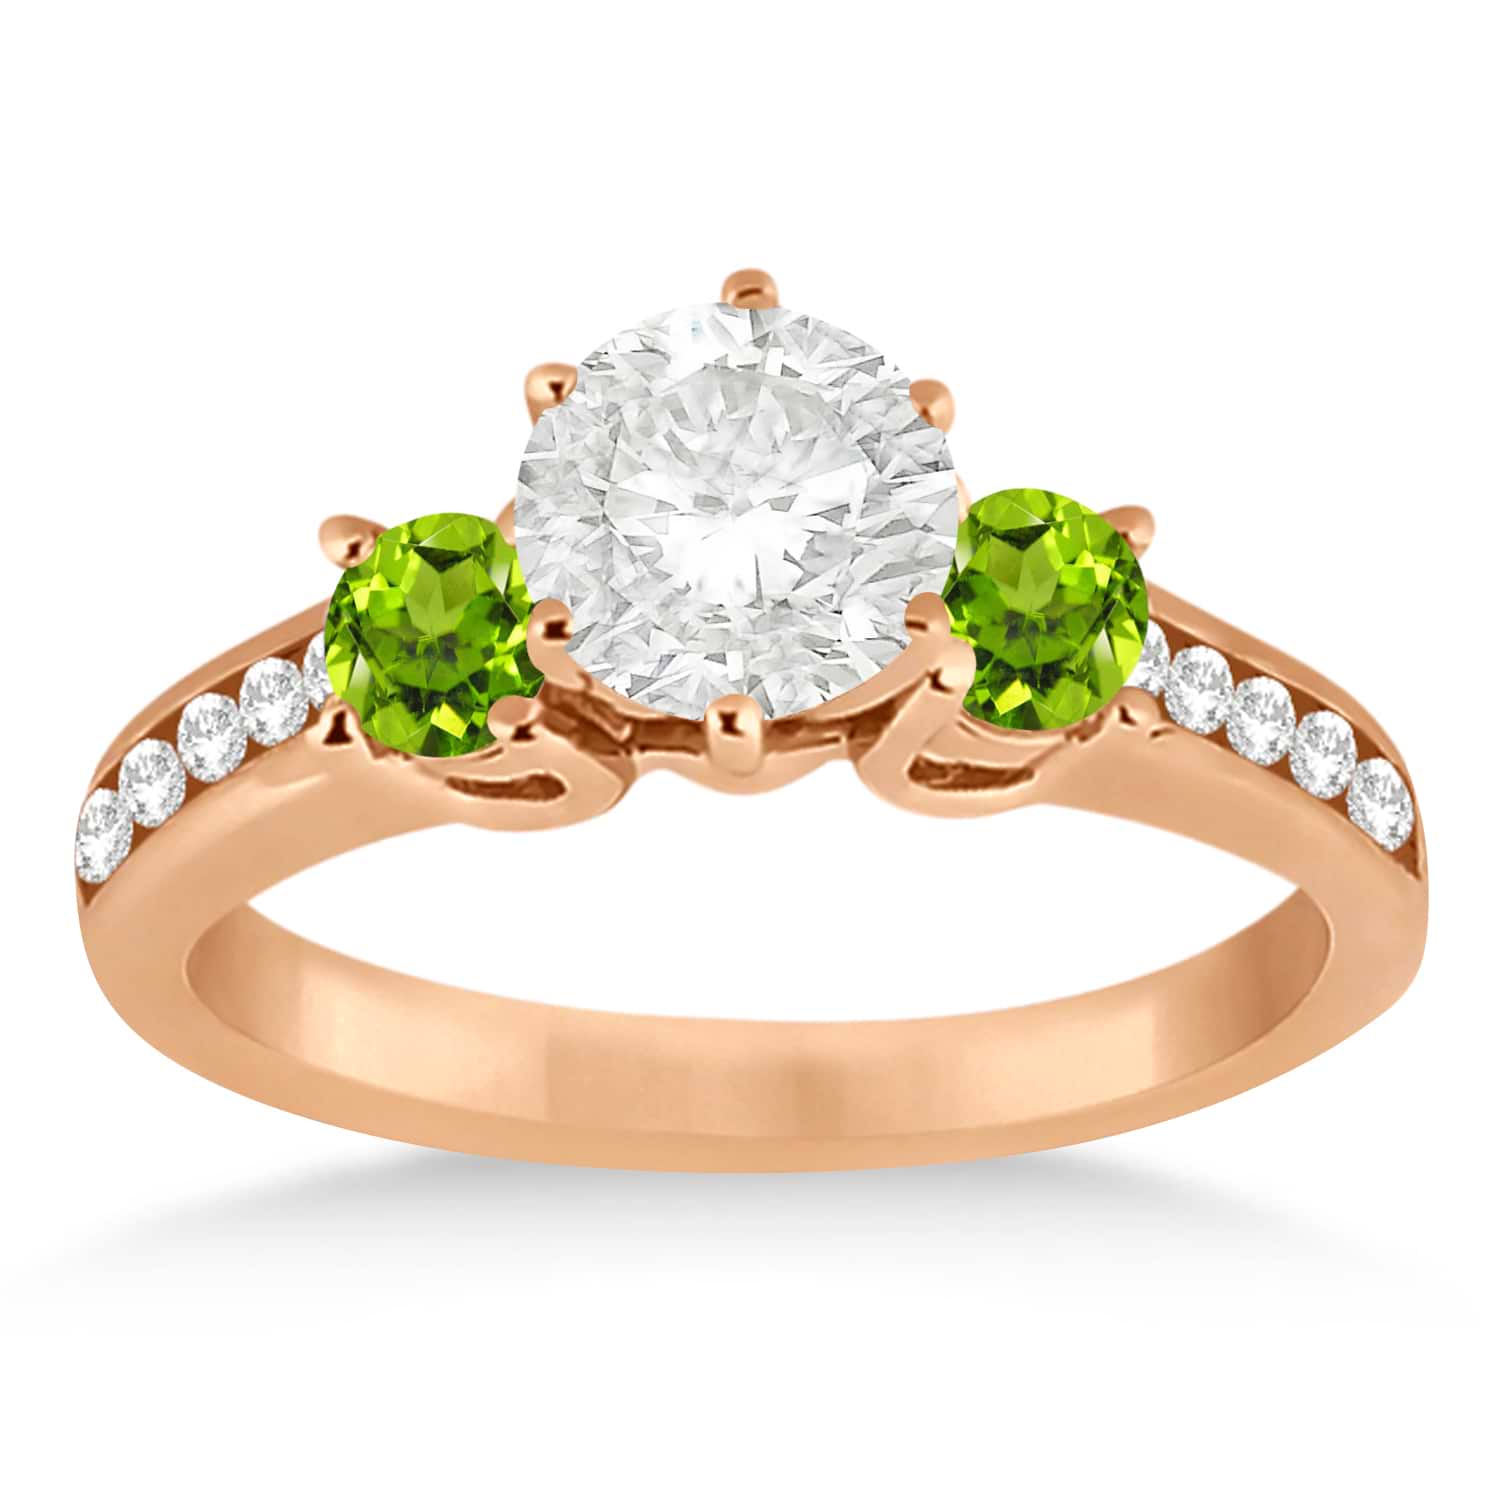 Three-Stone Peridot & Diamond Engagement Ring 14k Rose Gold (0.45ct)